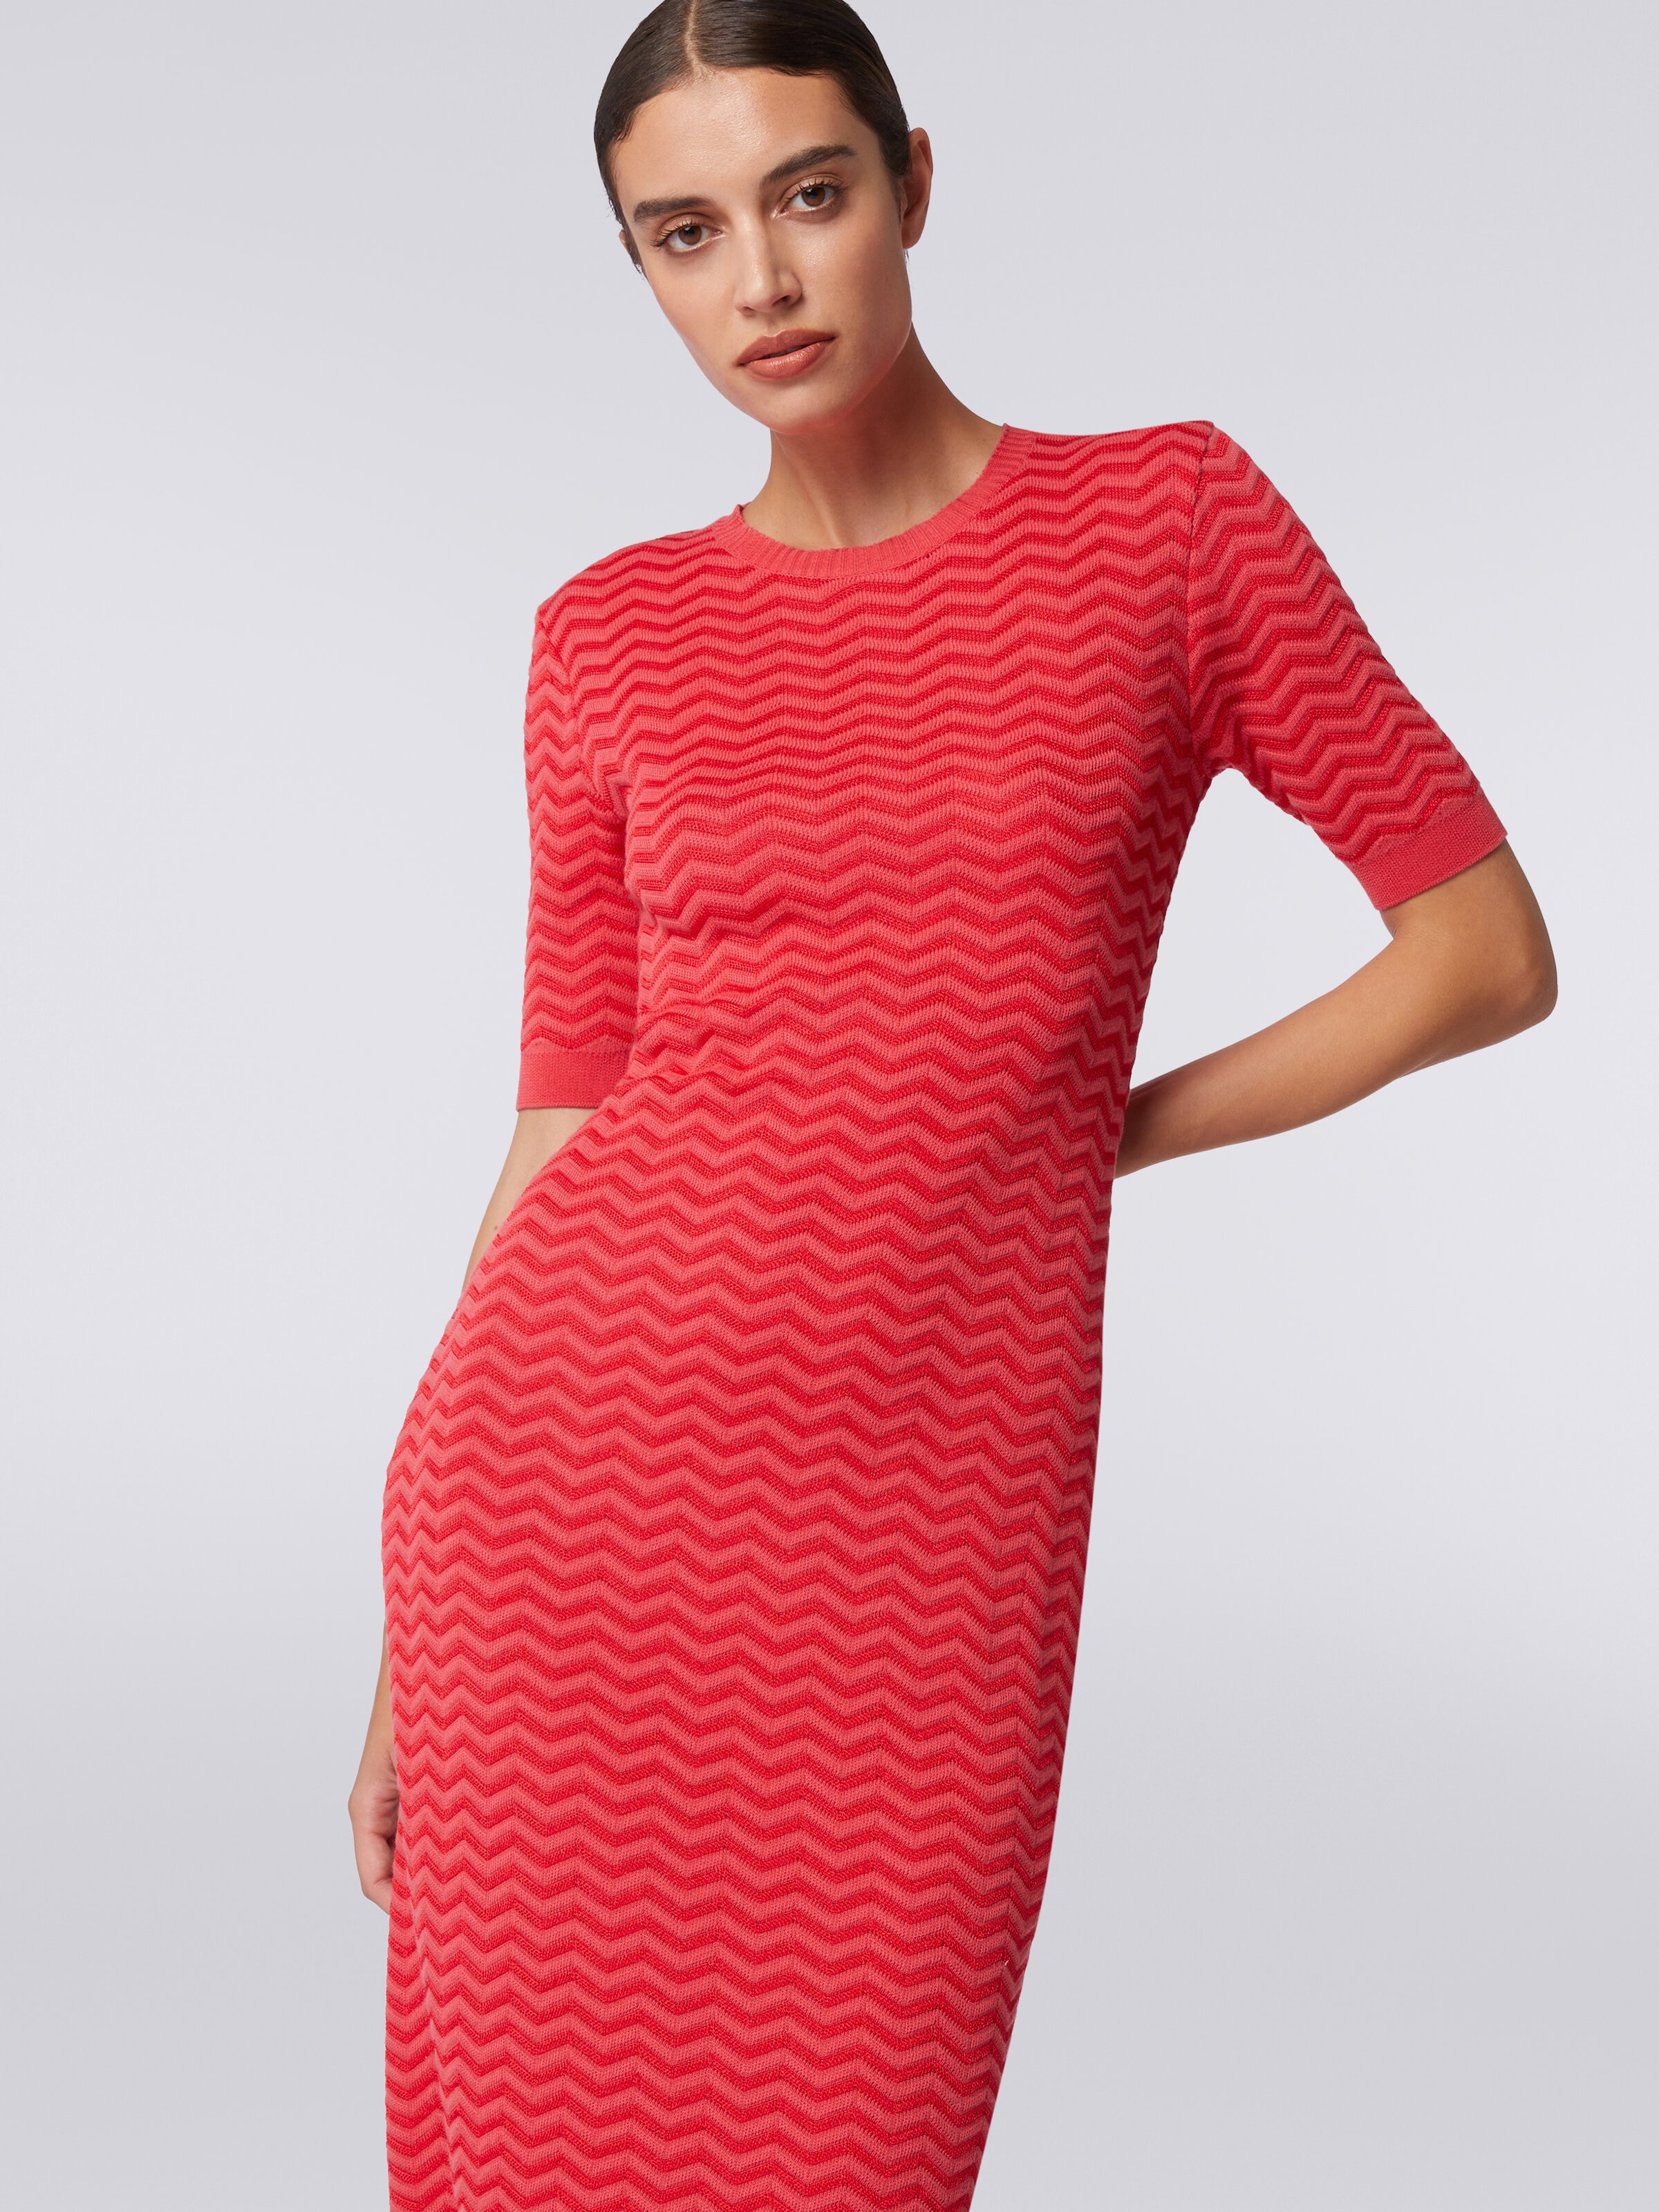 Longuette-Kleid aus Strick mit Chevronmuster und rundem Halsausschnitt, Rot  - 4